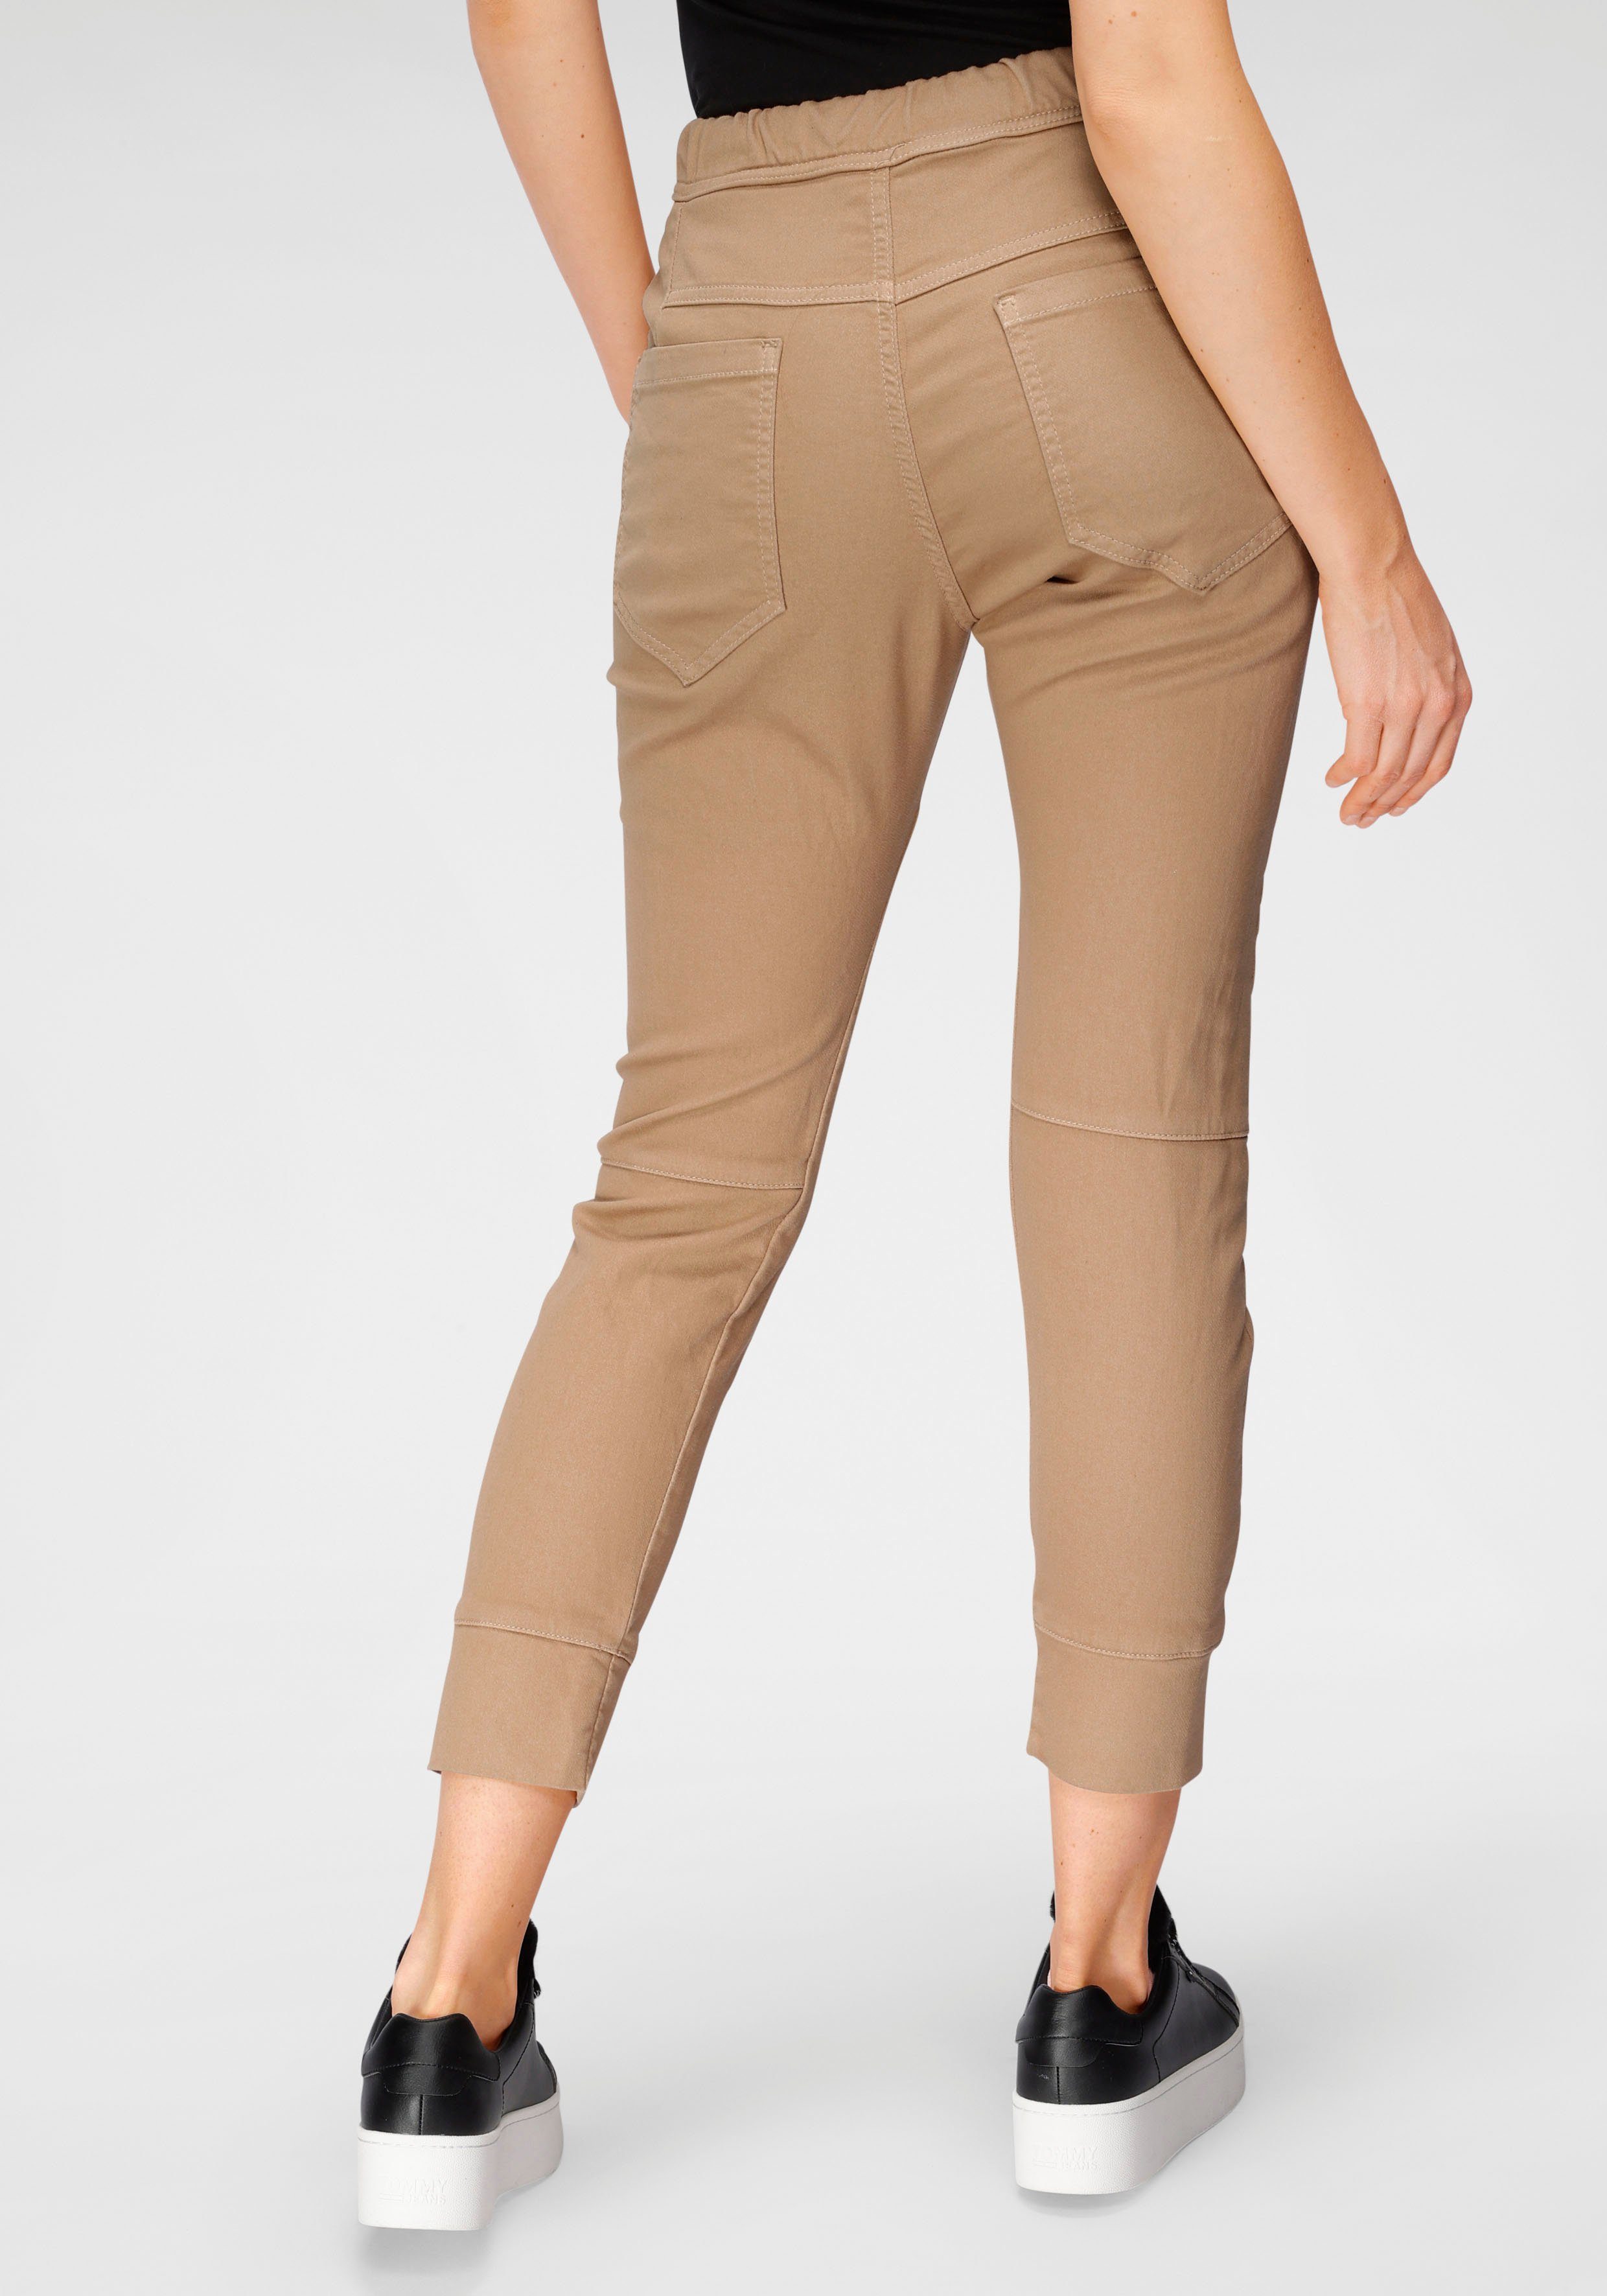 Damen Hosen Please Jeans Jogger Pants PL51G im Relax-Fit mit praktischem Gummizug-Bund